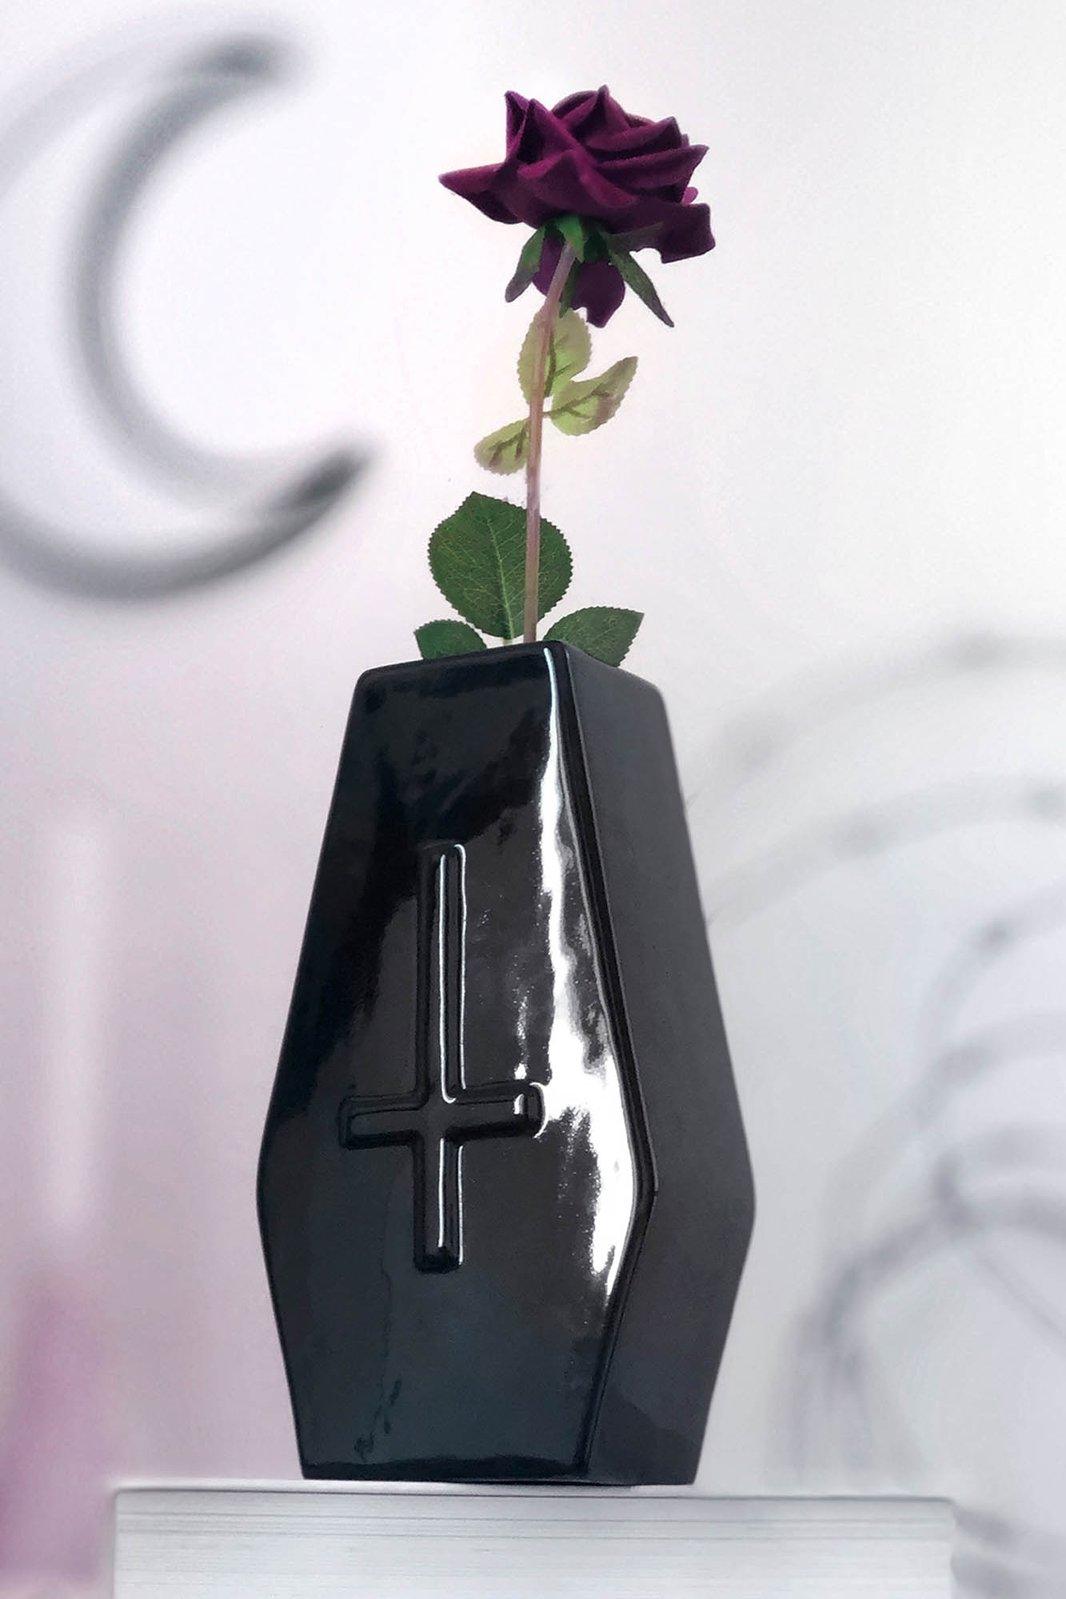 gothic vase